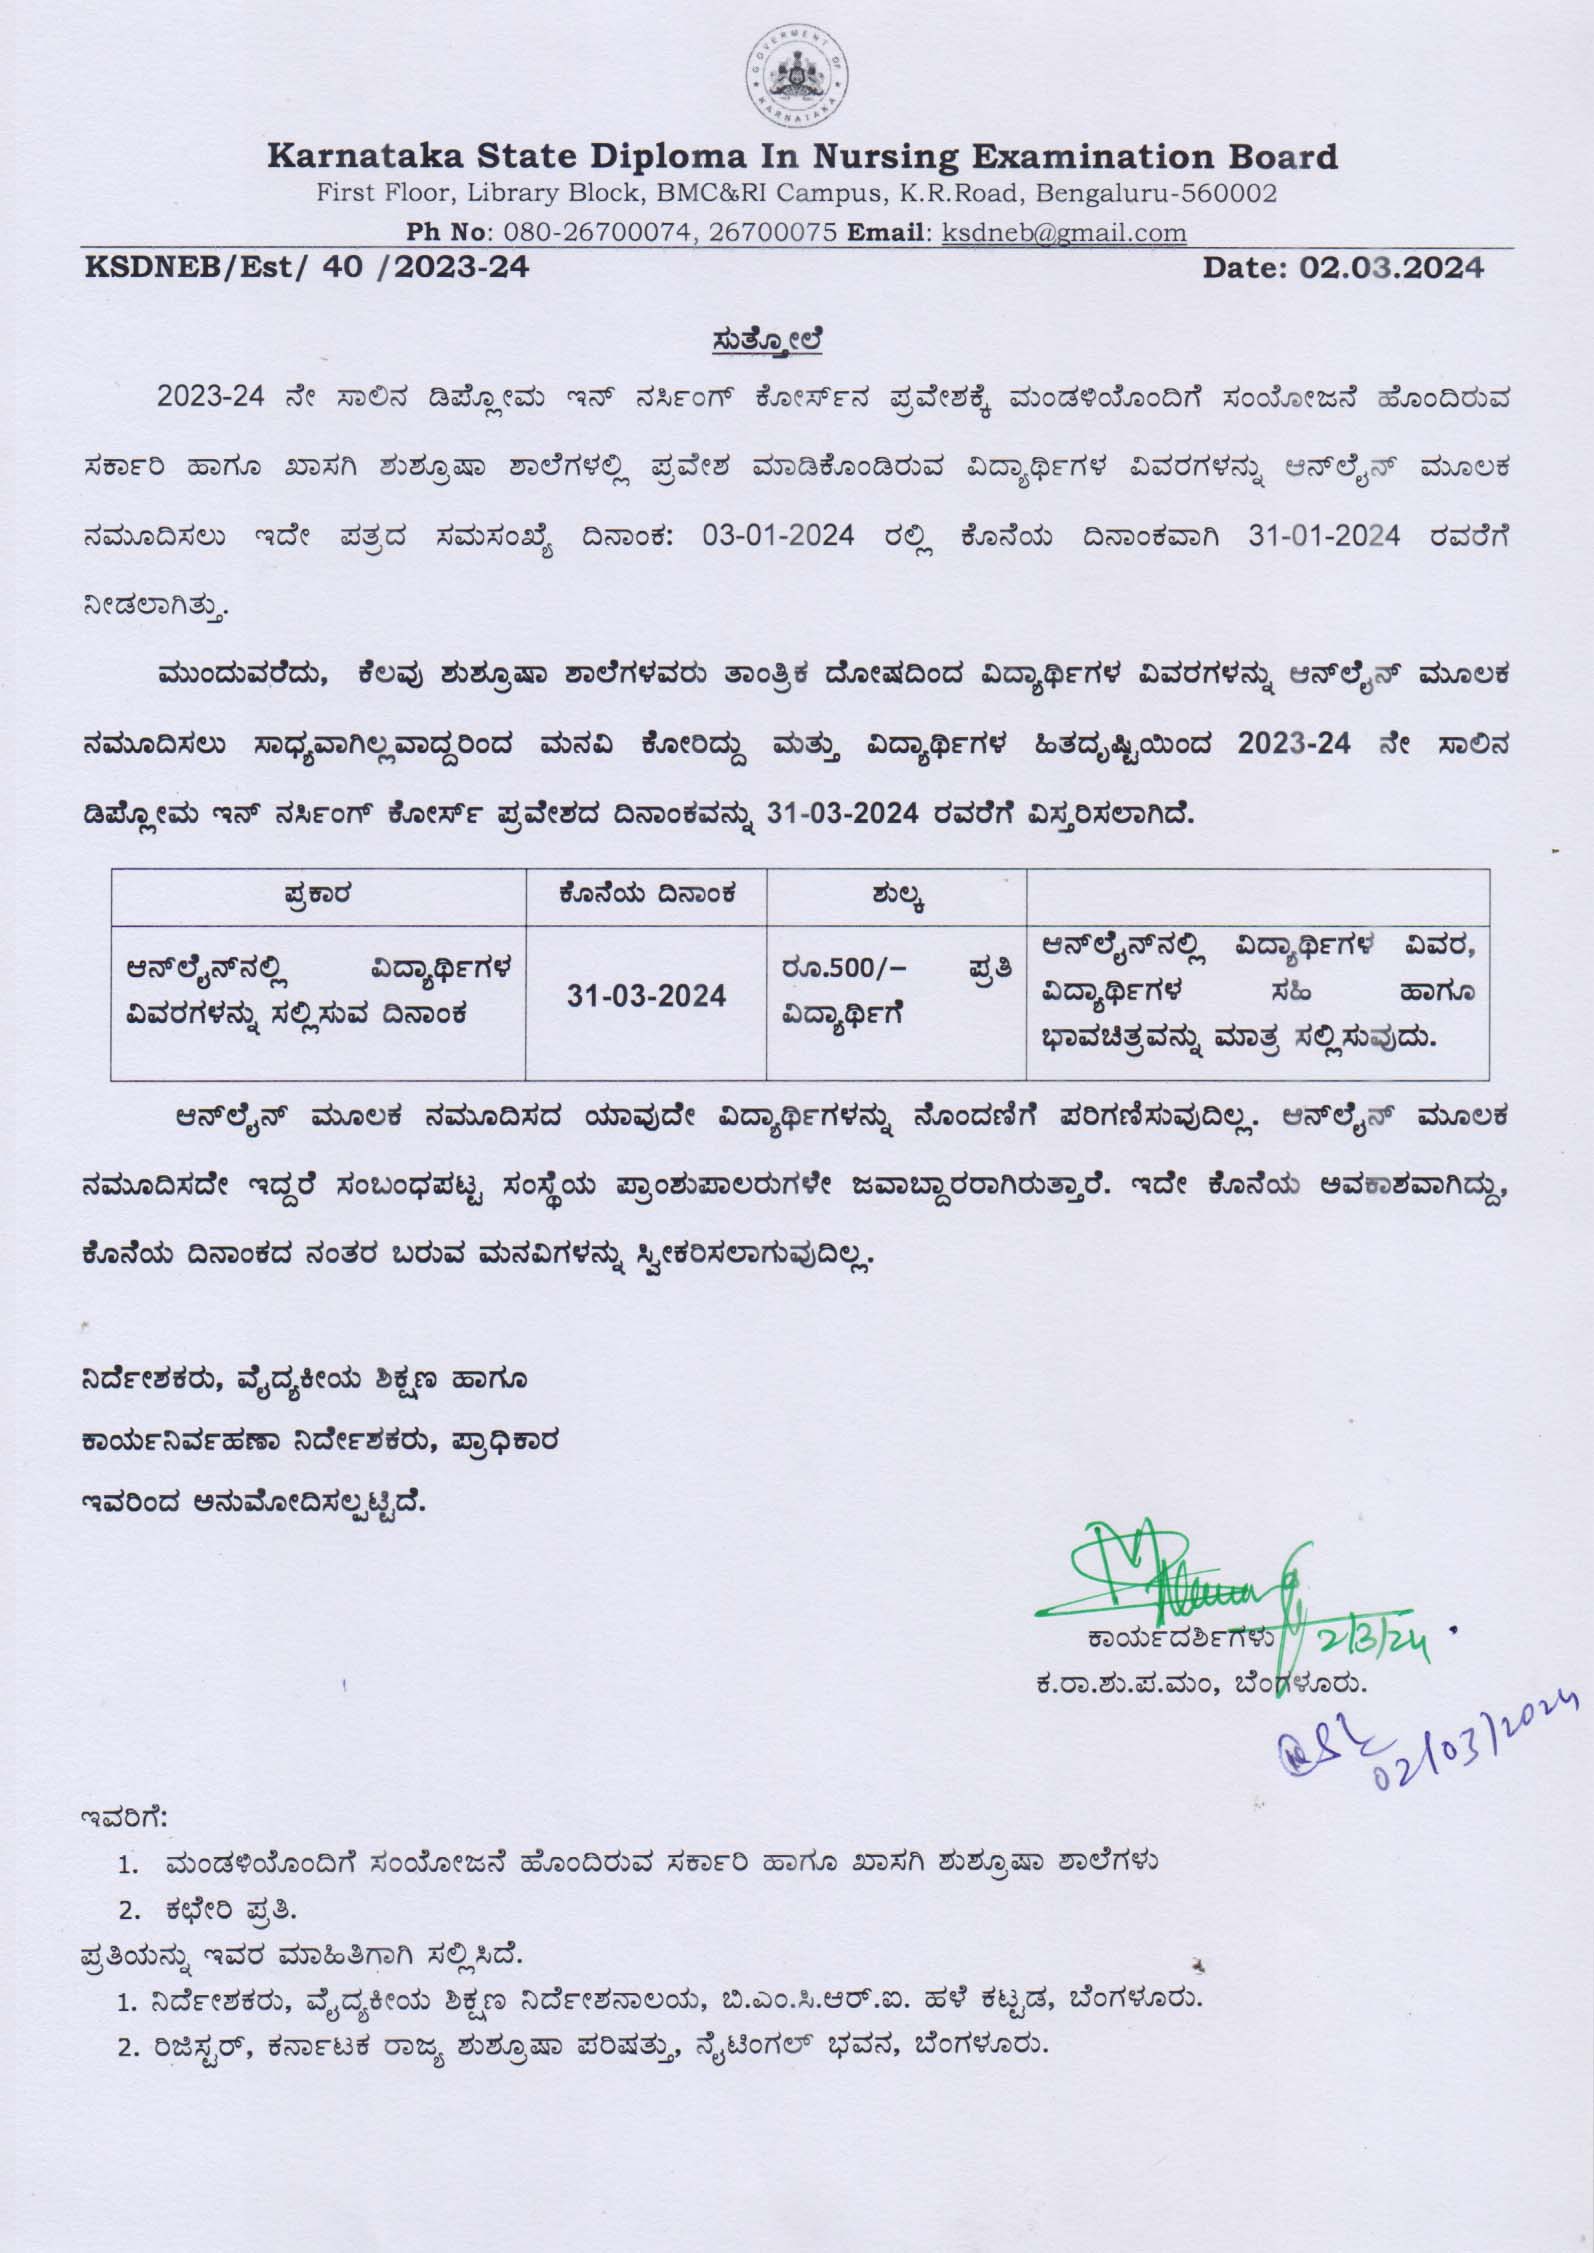 Karnataka State Diploma in Nursing Examination Board